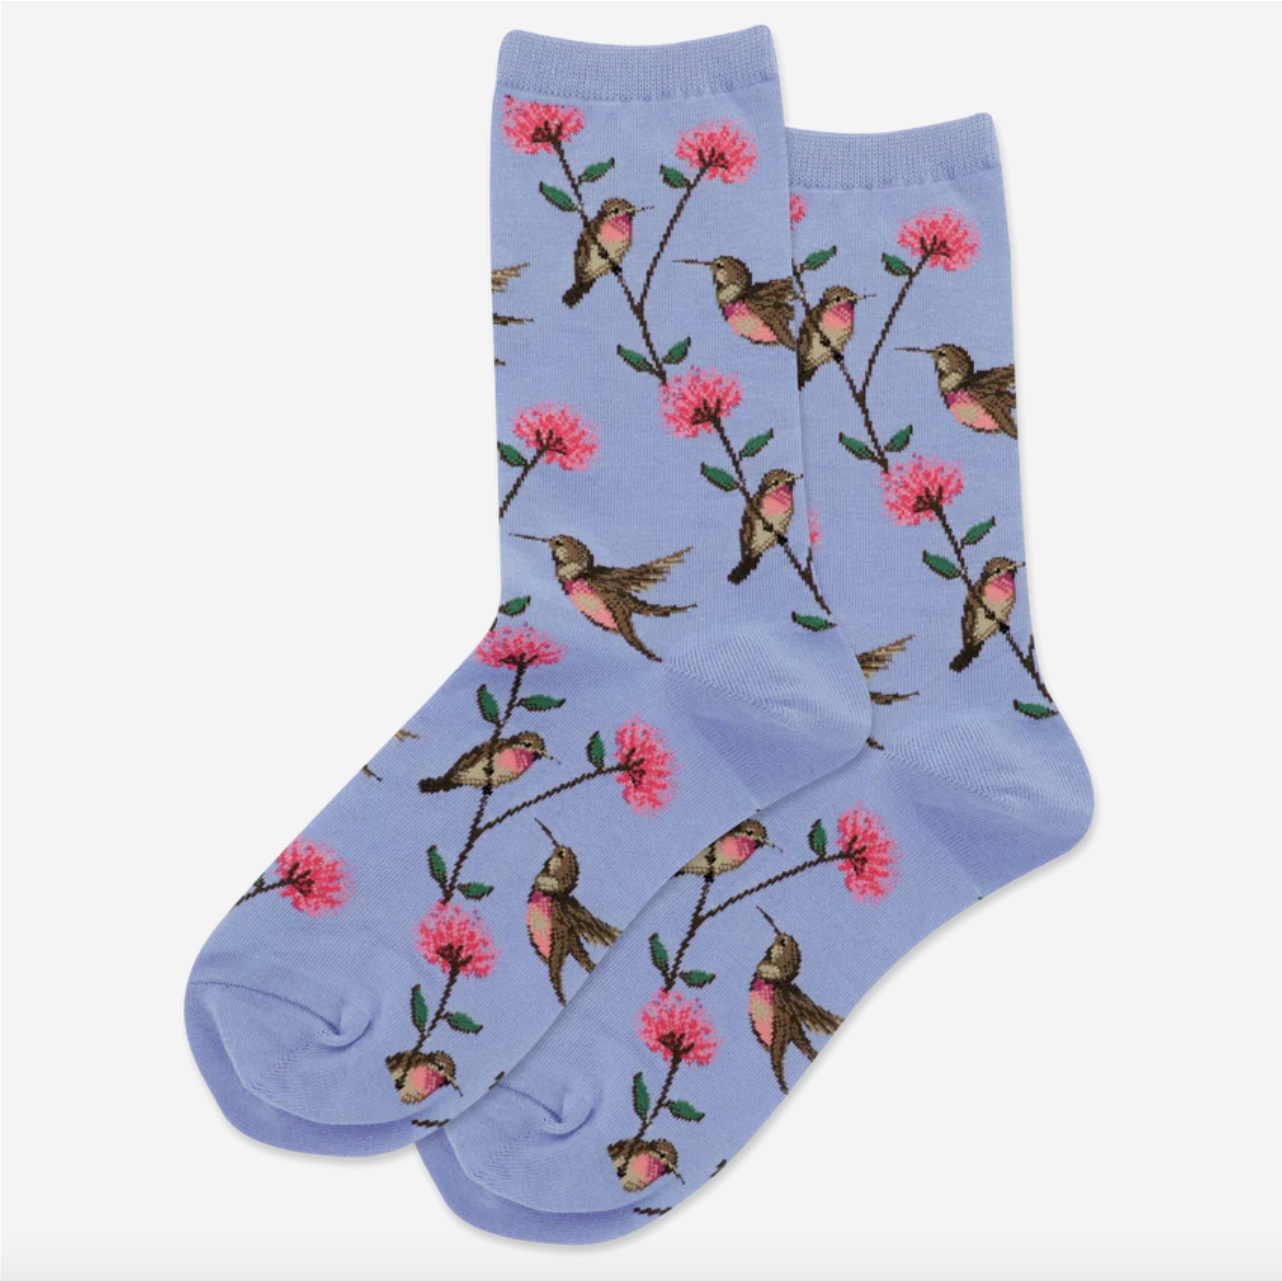 Hot Sox Hummingbird Socks - Multiple Colors